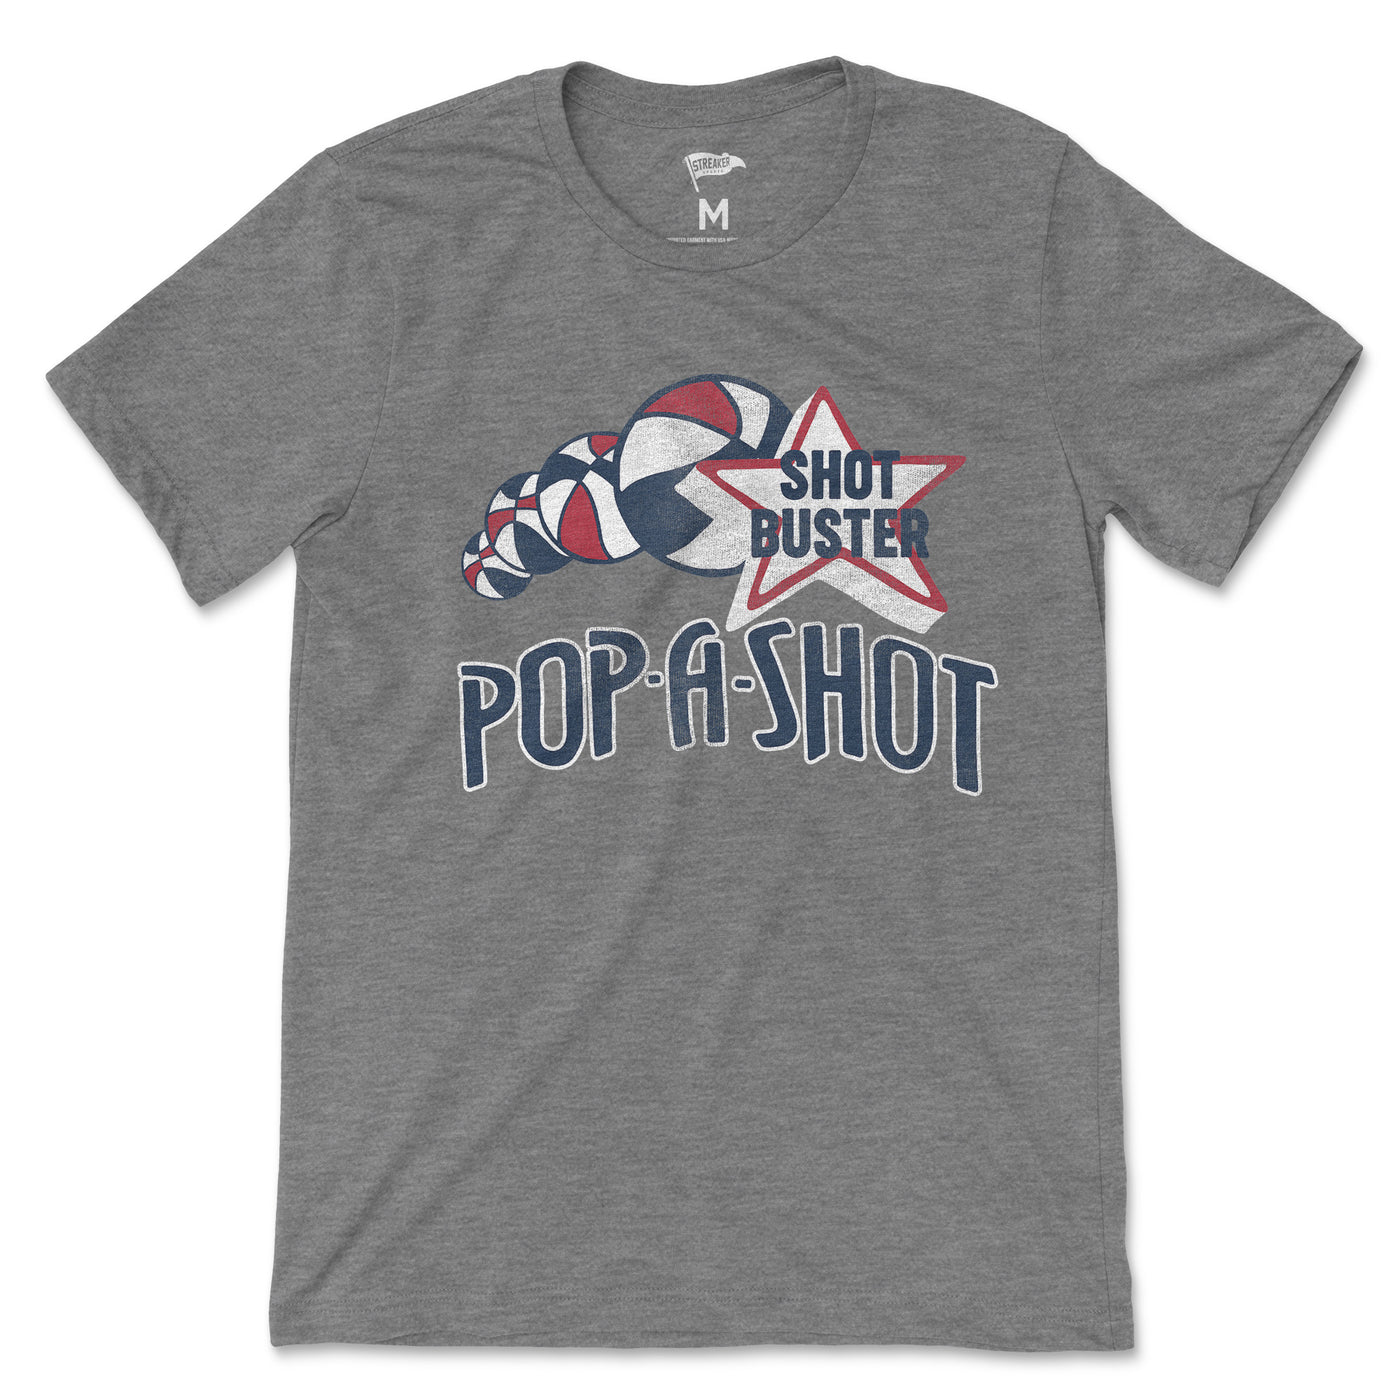 Pop-A-Shot Shot Buster Tee - Streaker Sports